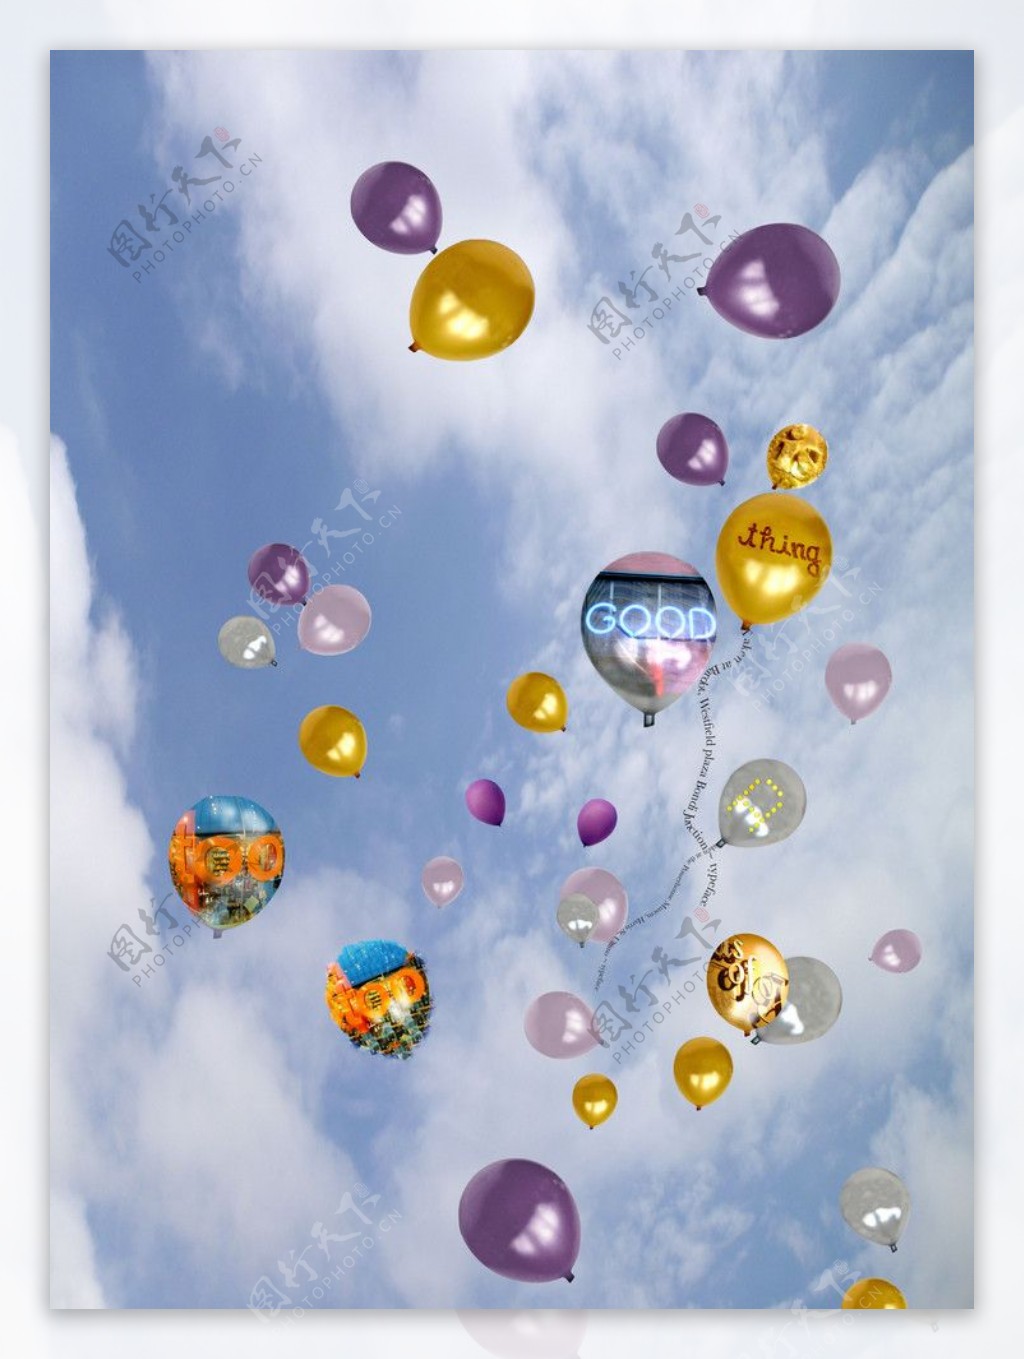 向空中飞的五彩气球图片